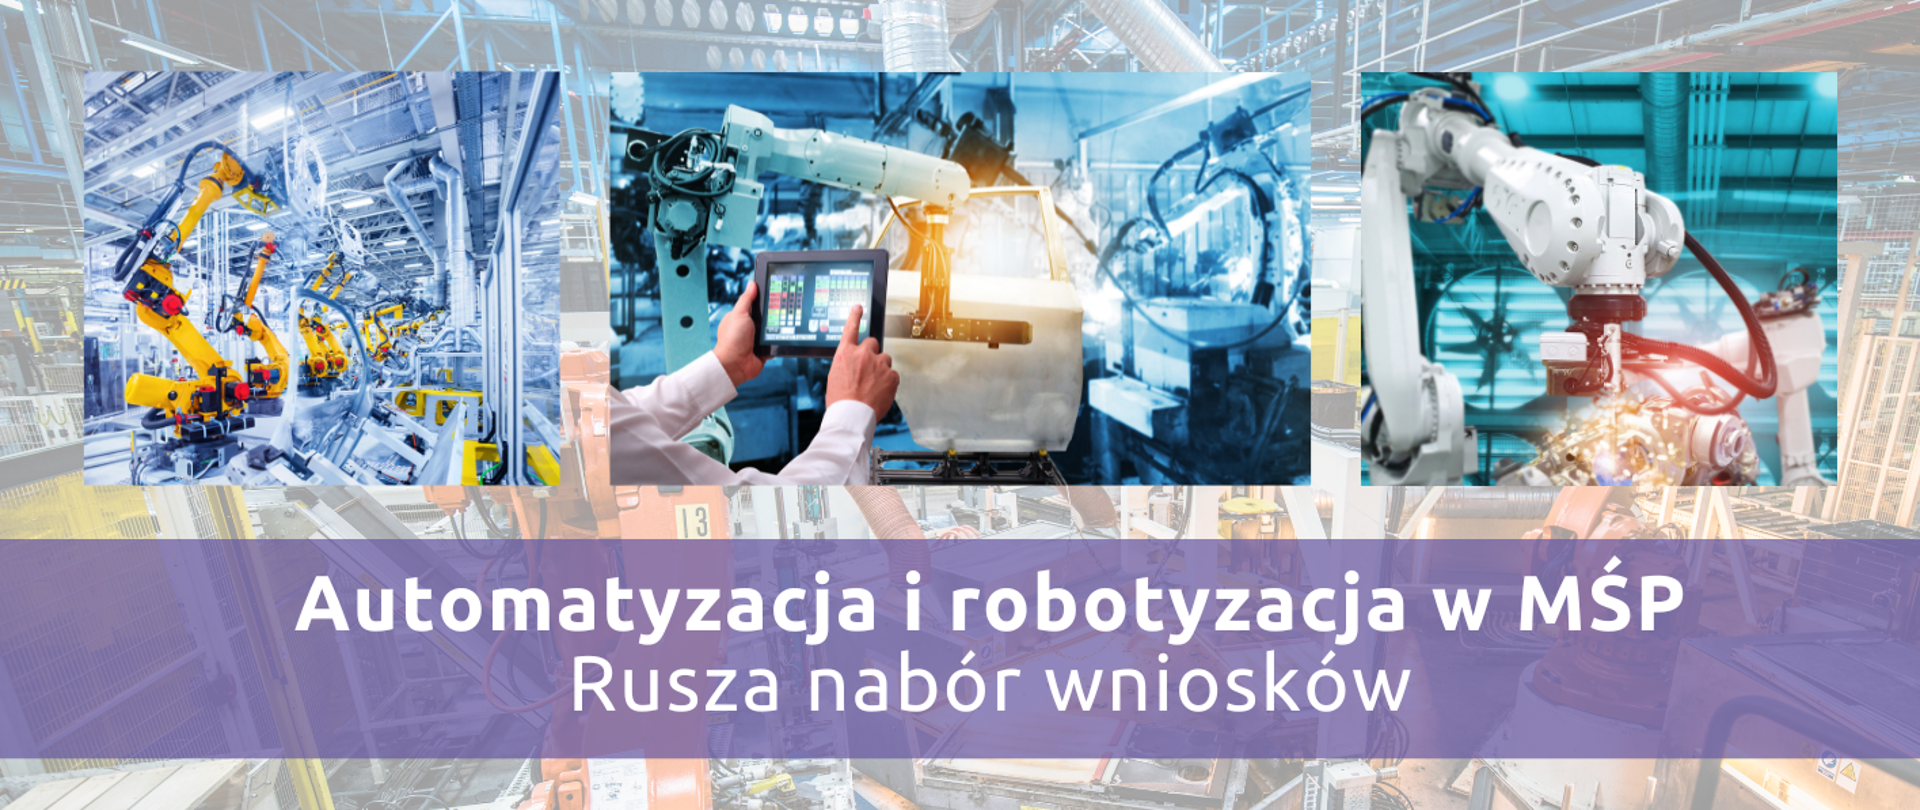 Automatyzacja i robotyzacja w MŚP